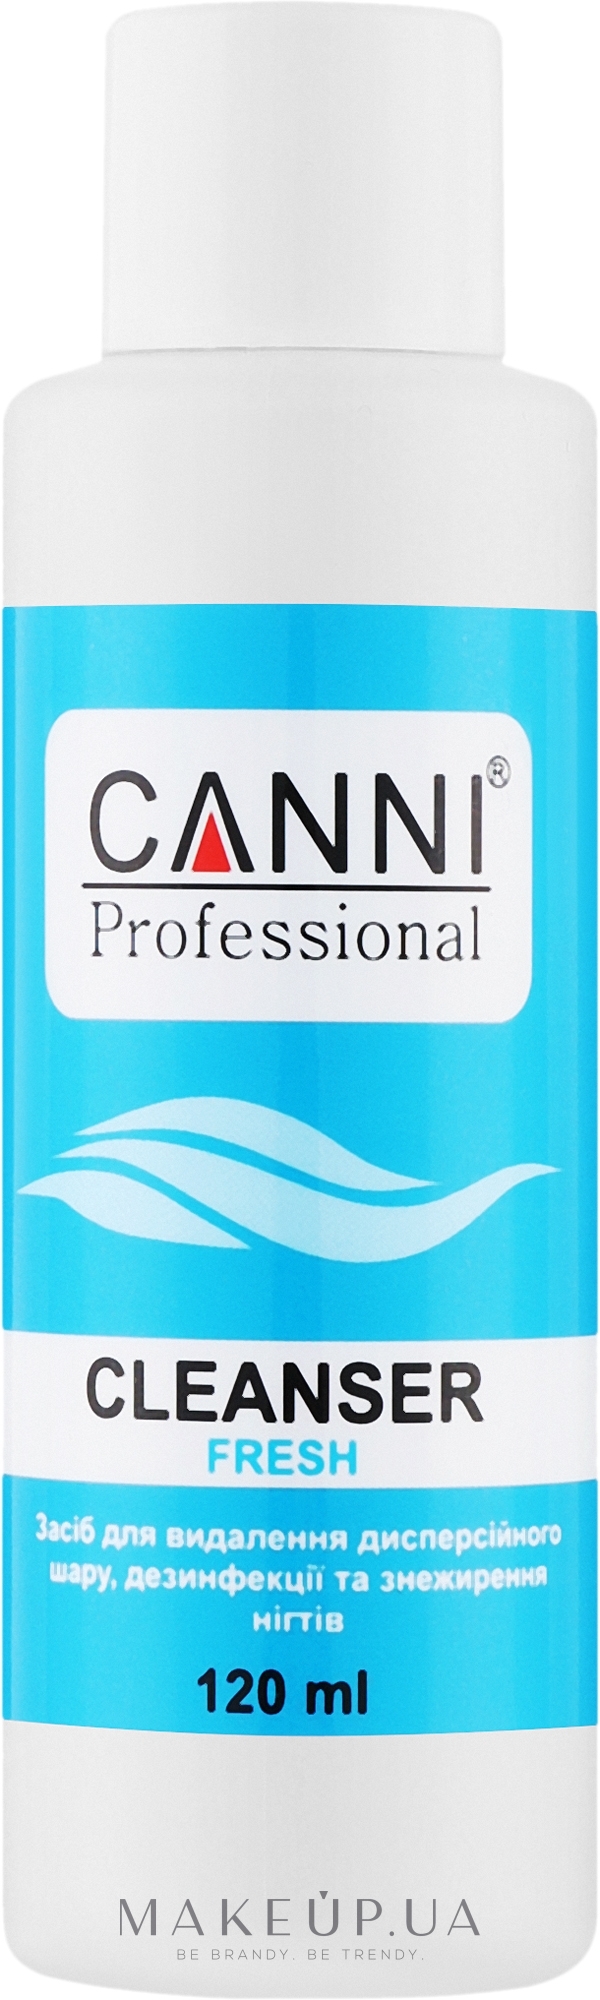 Засіб для видалення липкого шару, дезінфекції та знежирення нігтів - Canni Cleanser Fresh — фото 120ml